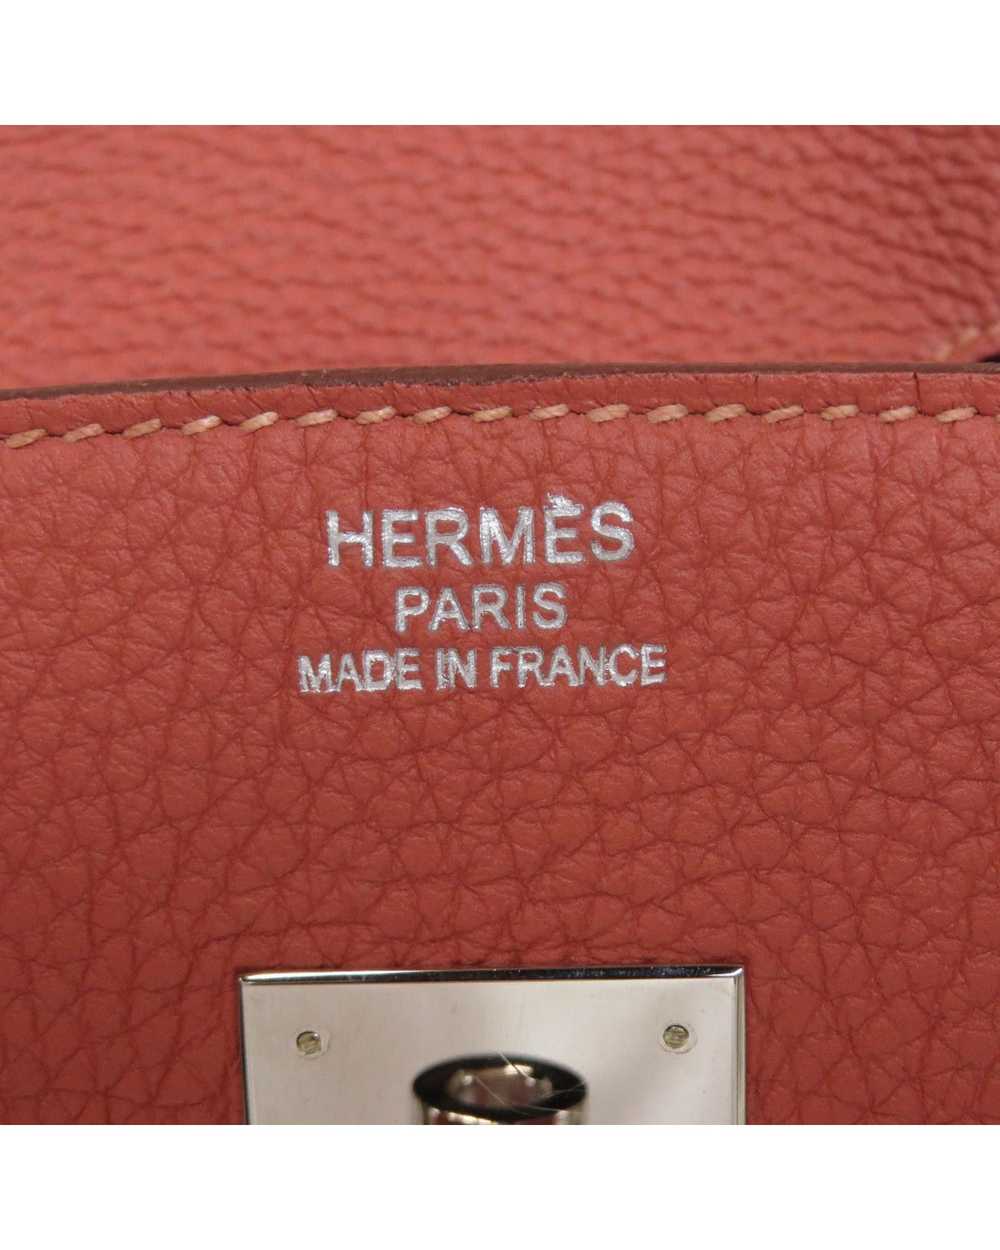 Hermes Pre-owned Hermes Birkin Handbag - image 6